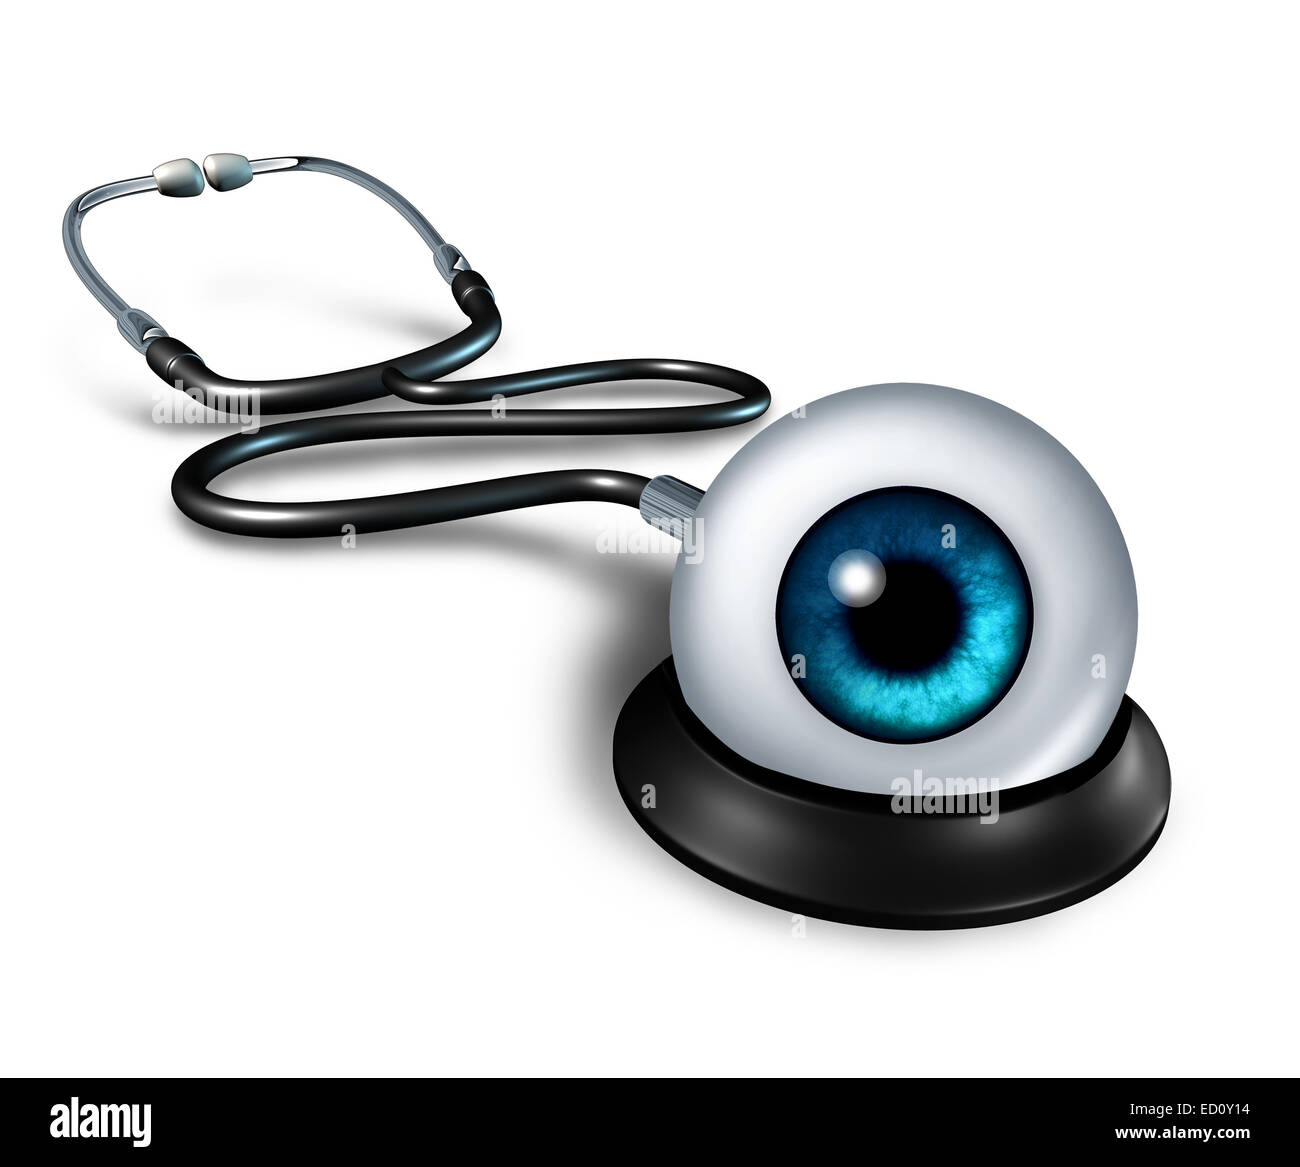 Ärztliche Untersuchung Gesundheitswesen Konzept als ein Stethoskop mit dem menschlichen Auge als Arztsymbol dafür, dass eine Diagnose Exa wachsam Stockfoto